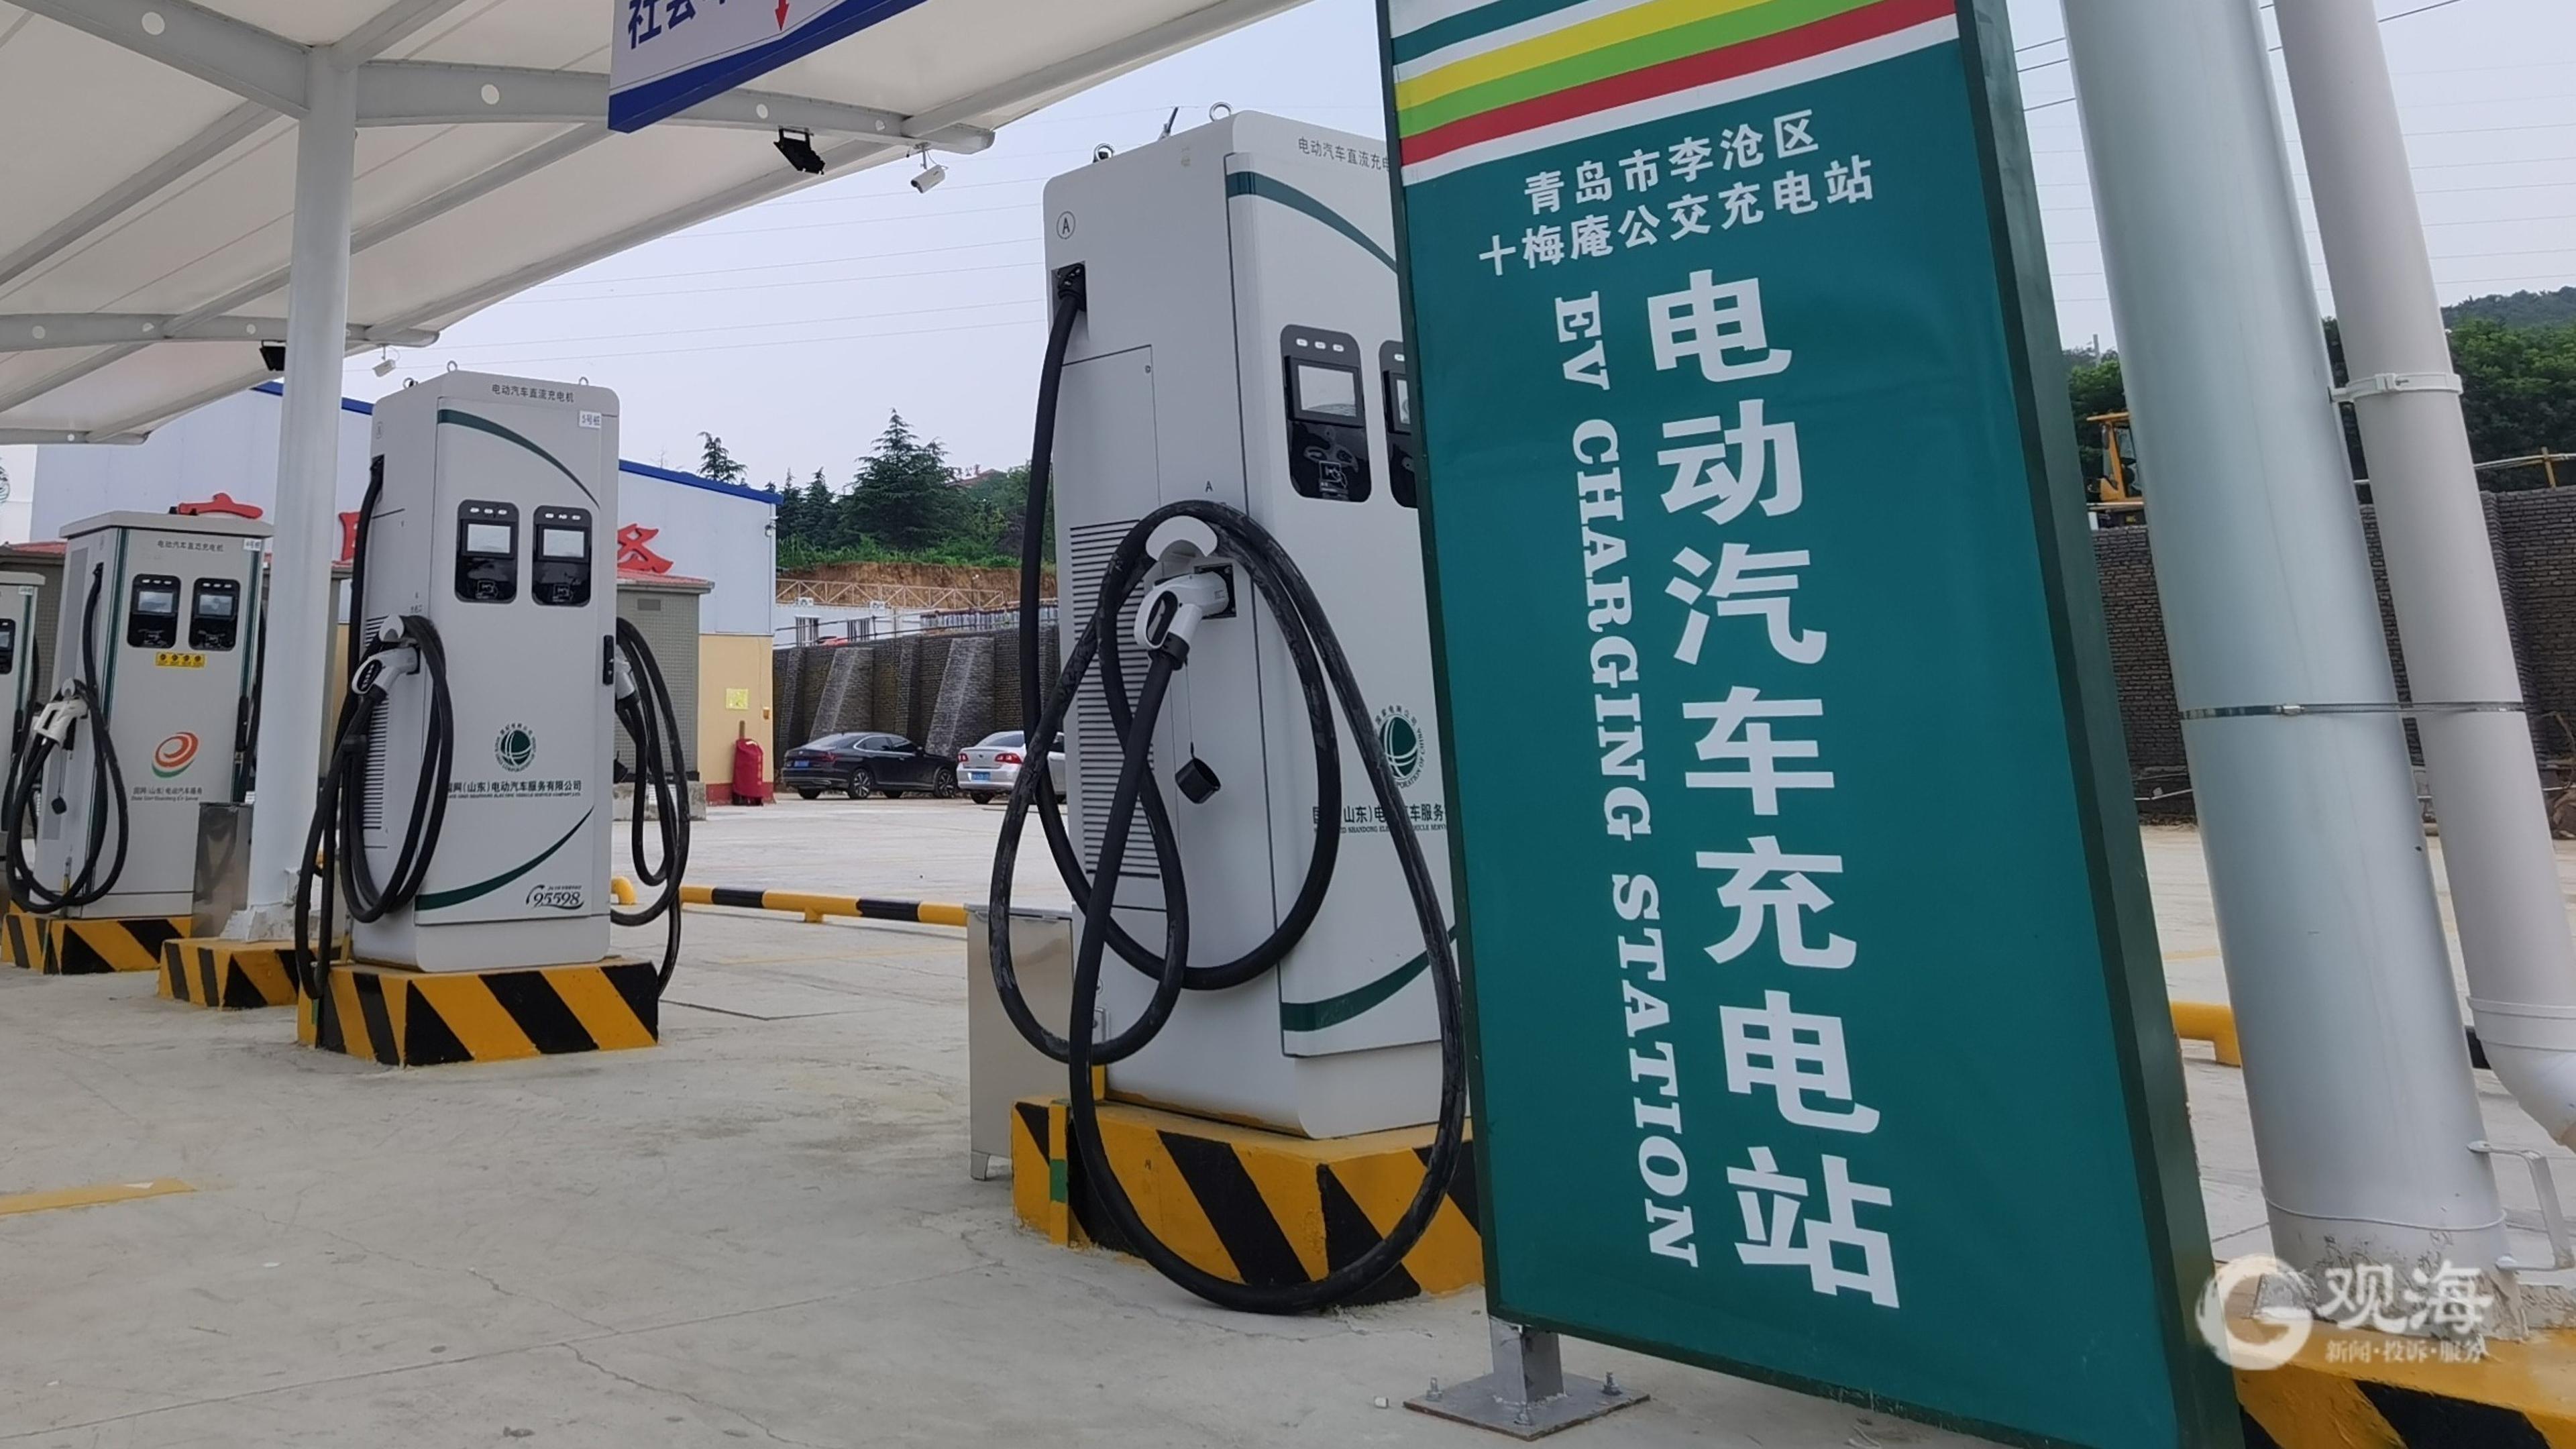 جایگاه های شارژ خودروی برقی در بلاروس با خودروهای چینی منطبق می شوند